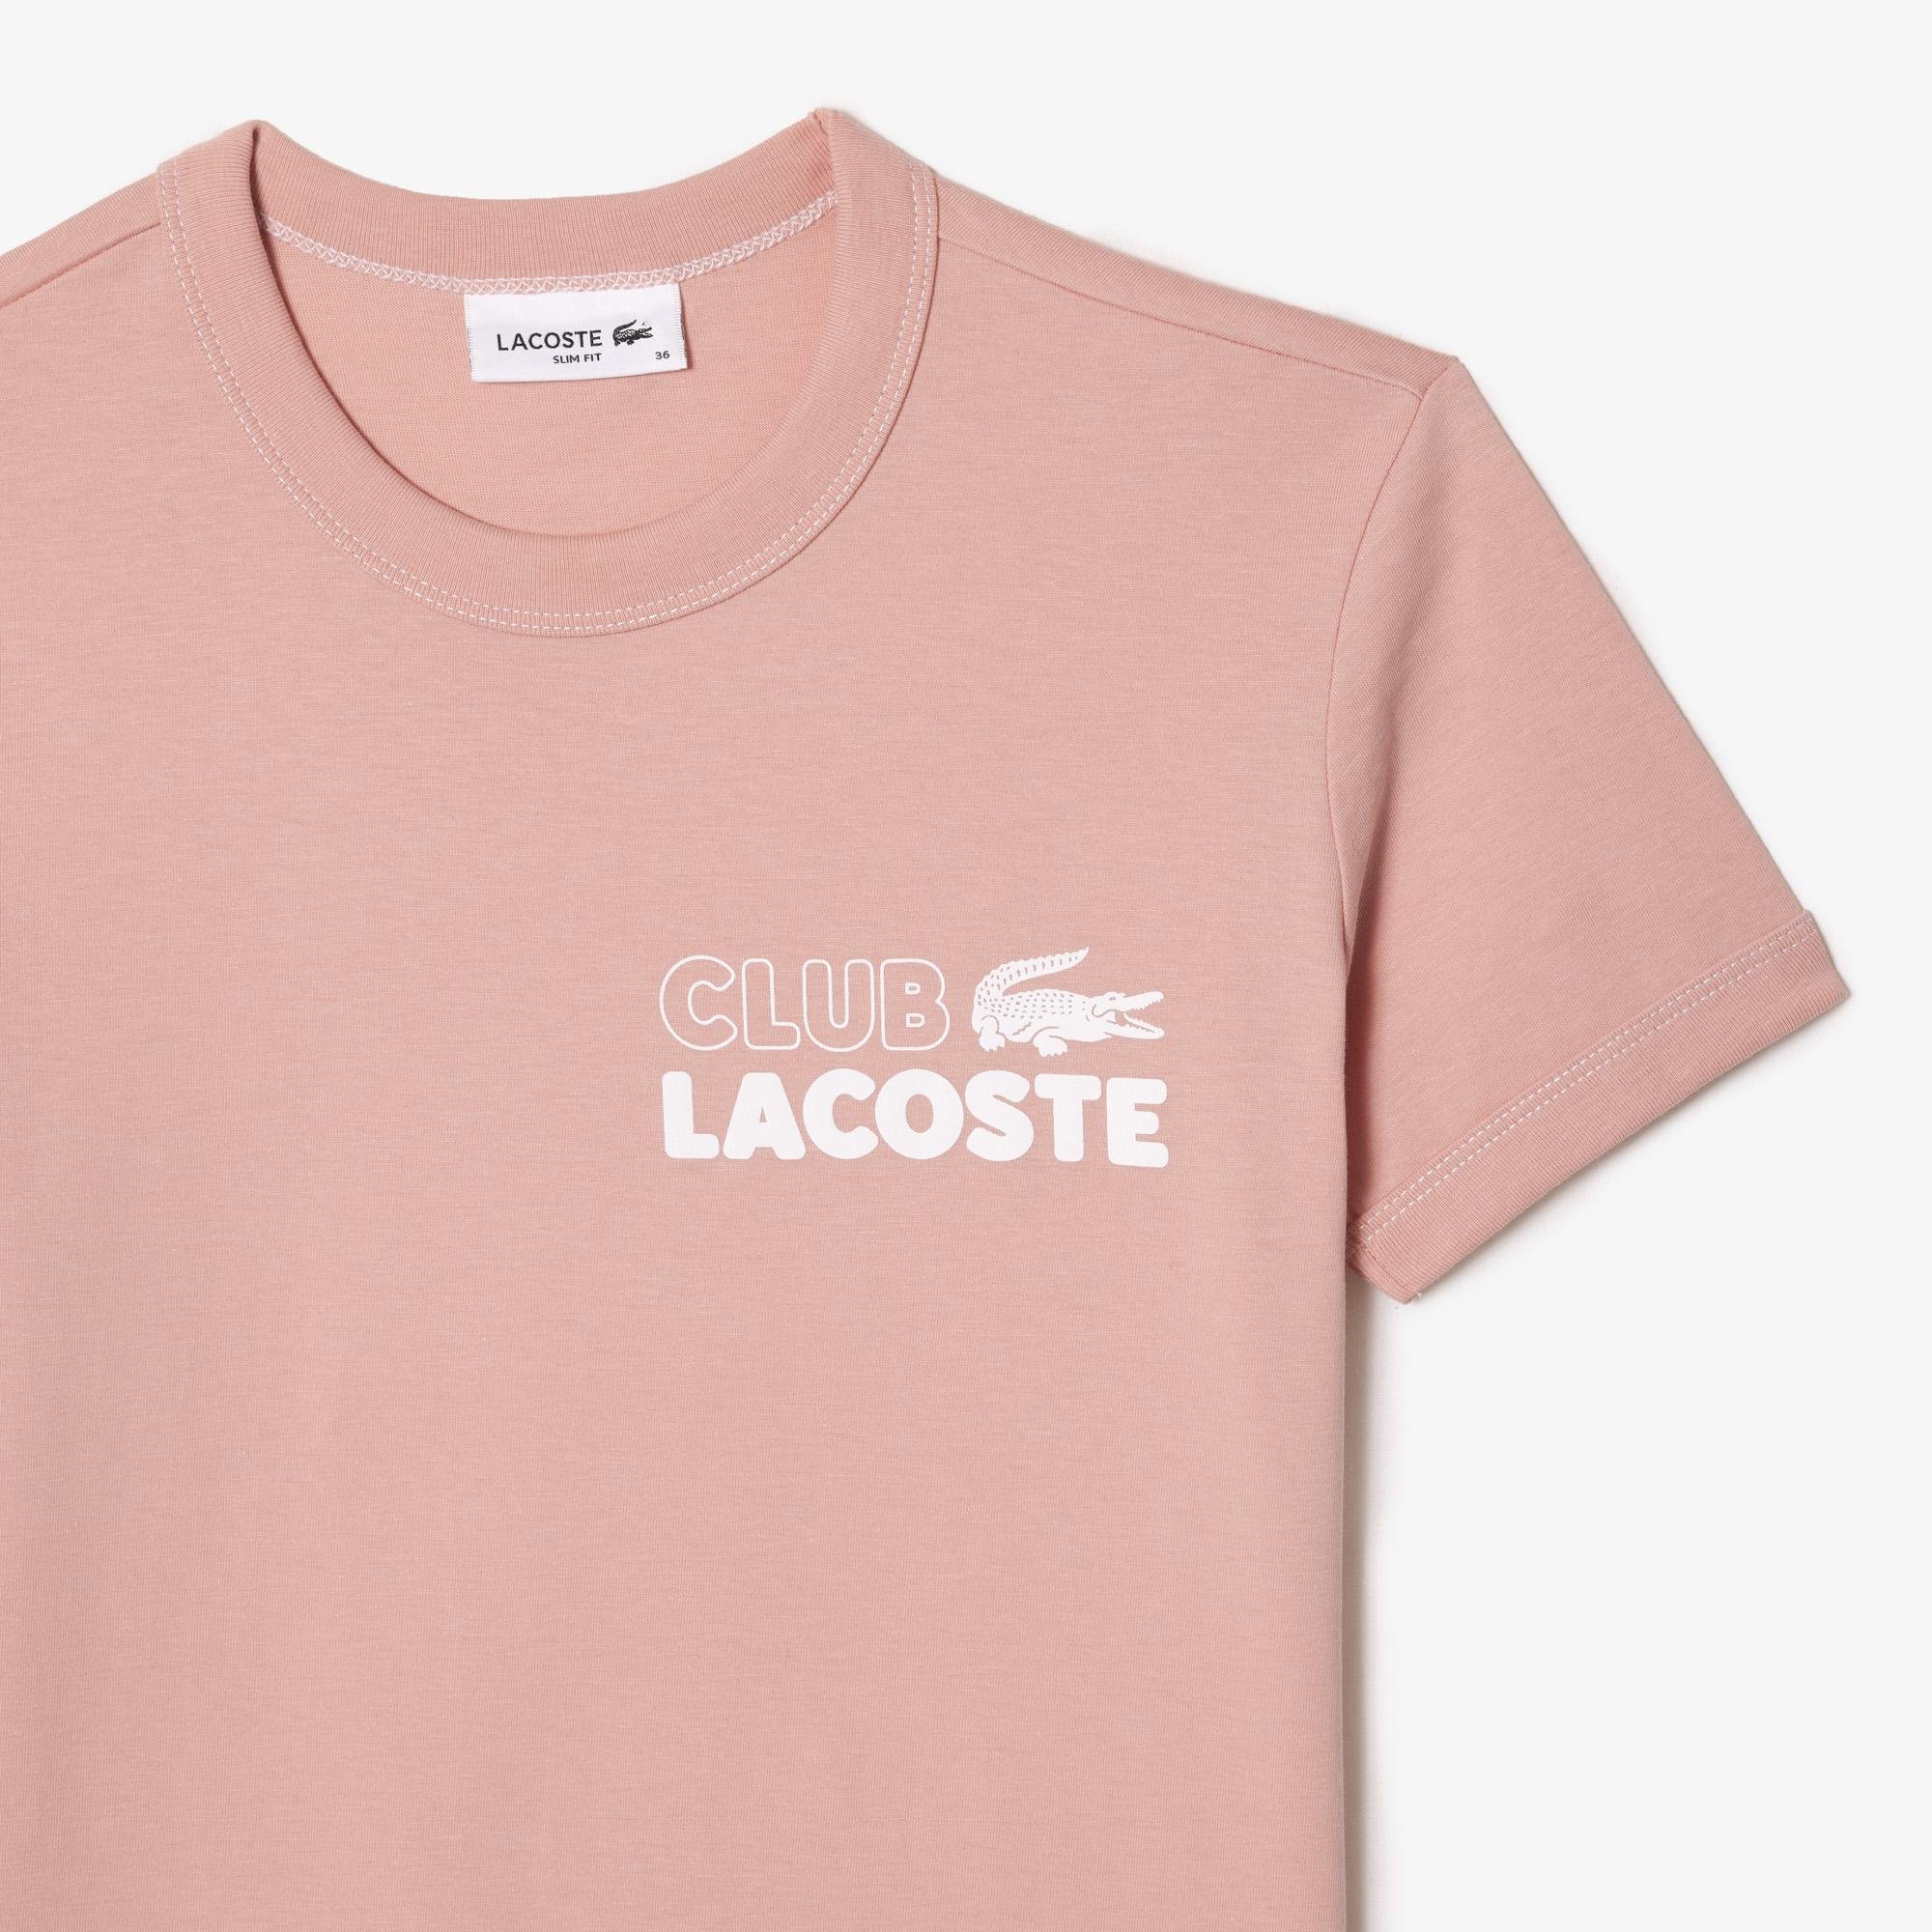 Lacoste női szűk szabású organikus pamut dzsörzé póló